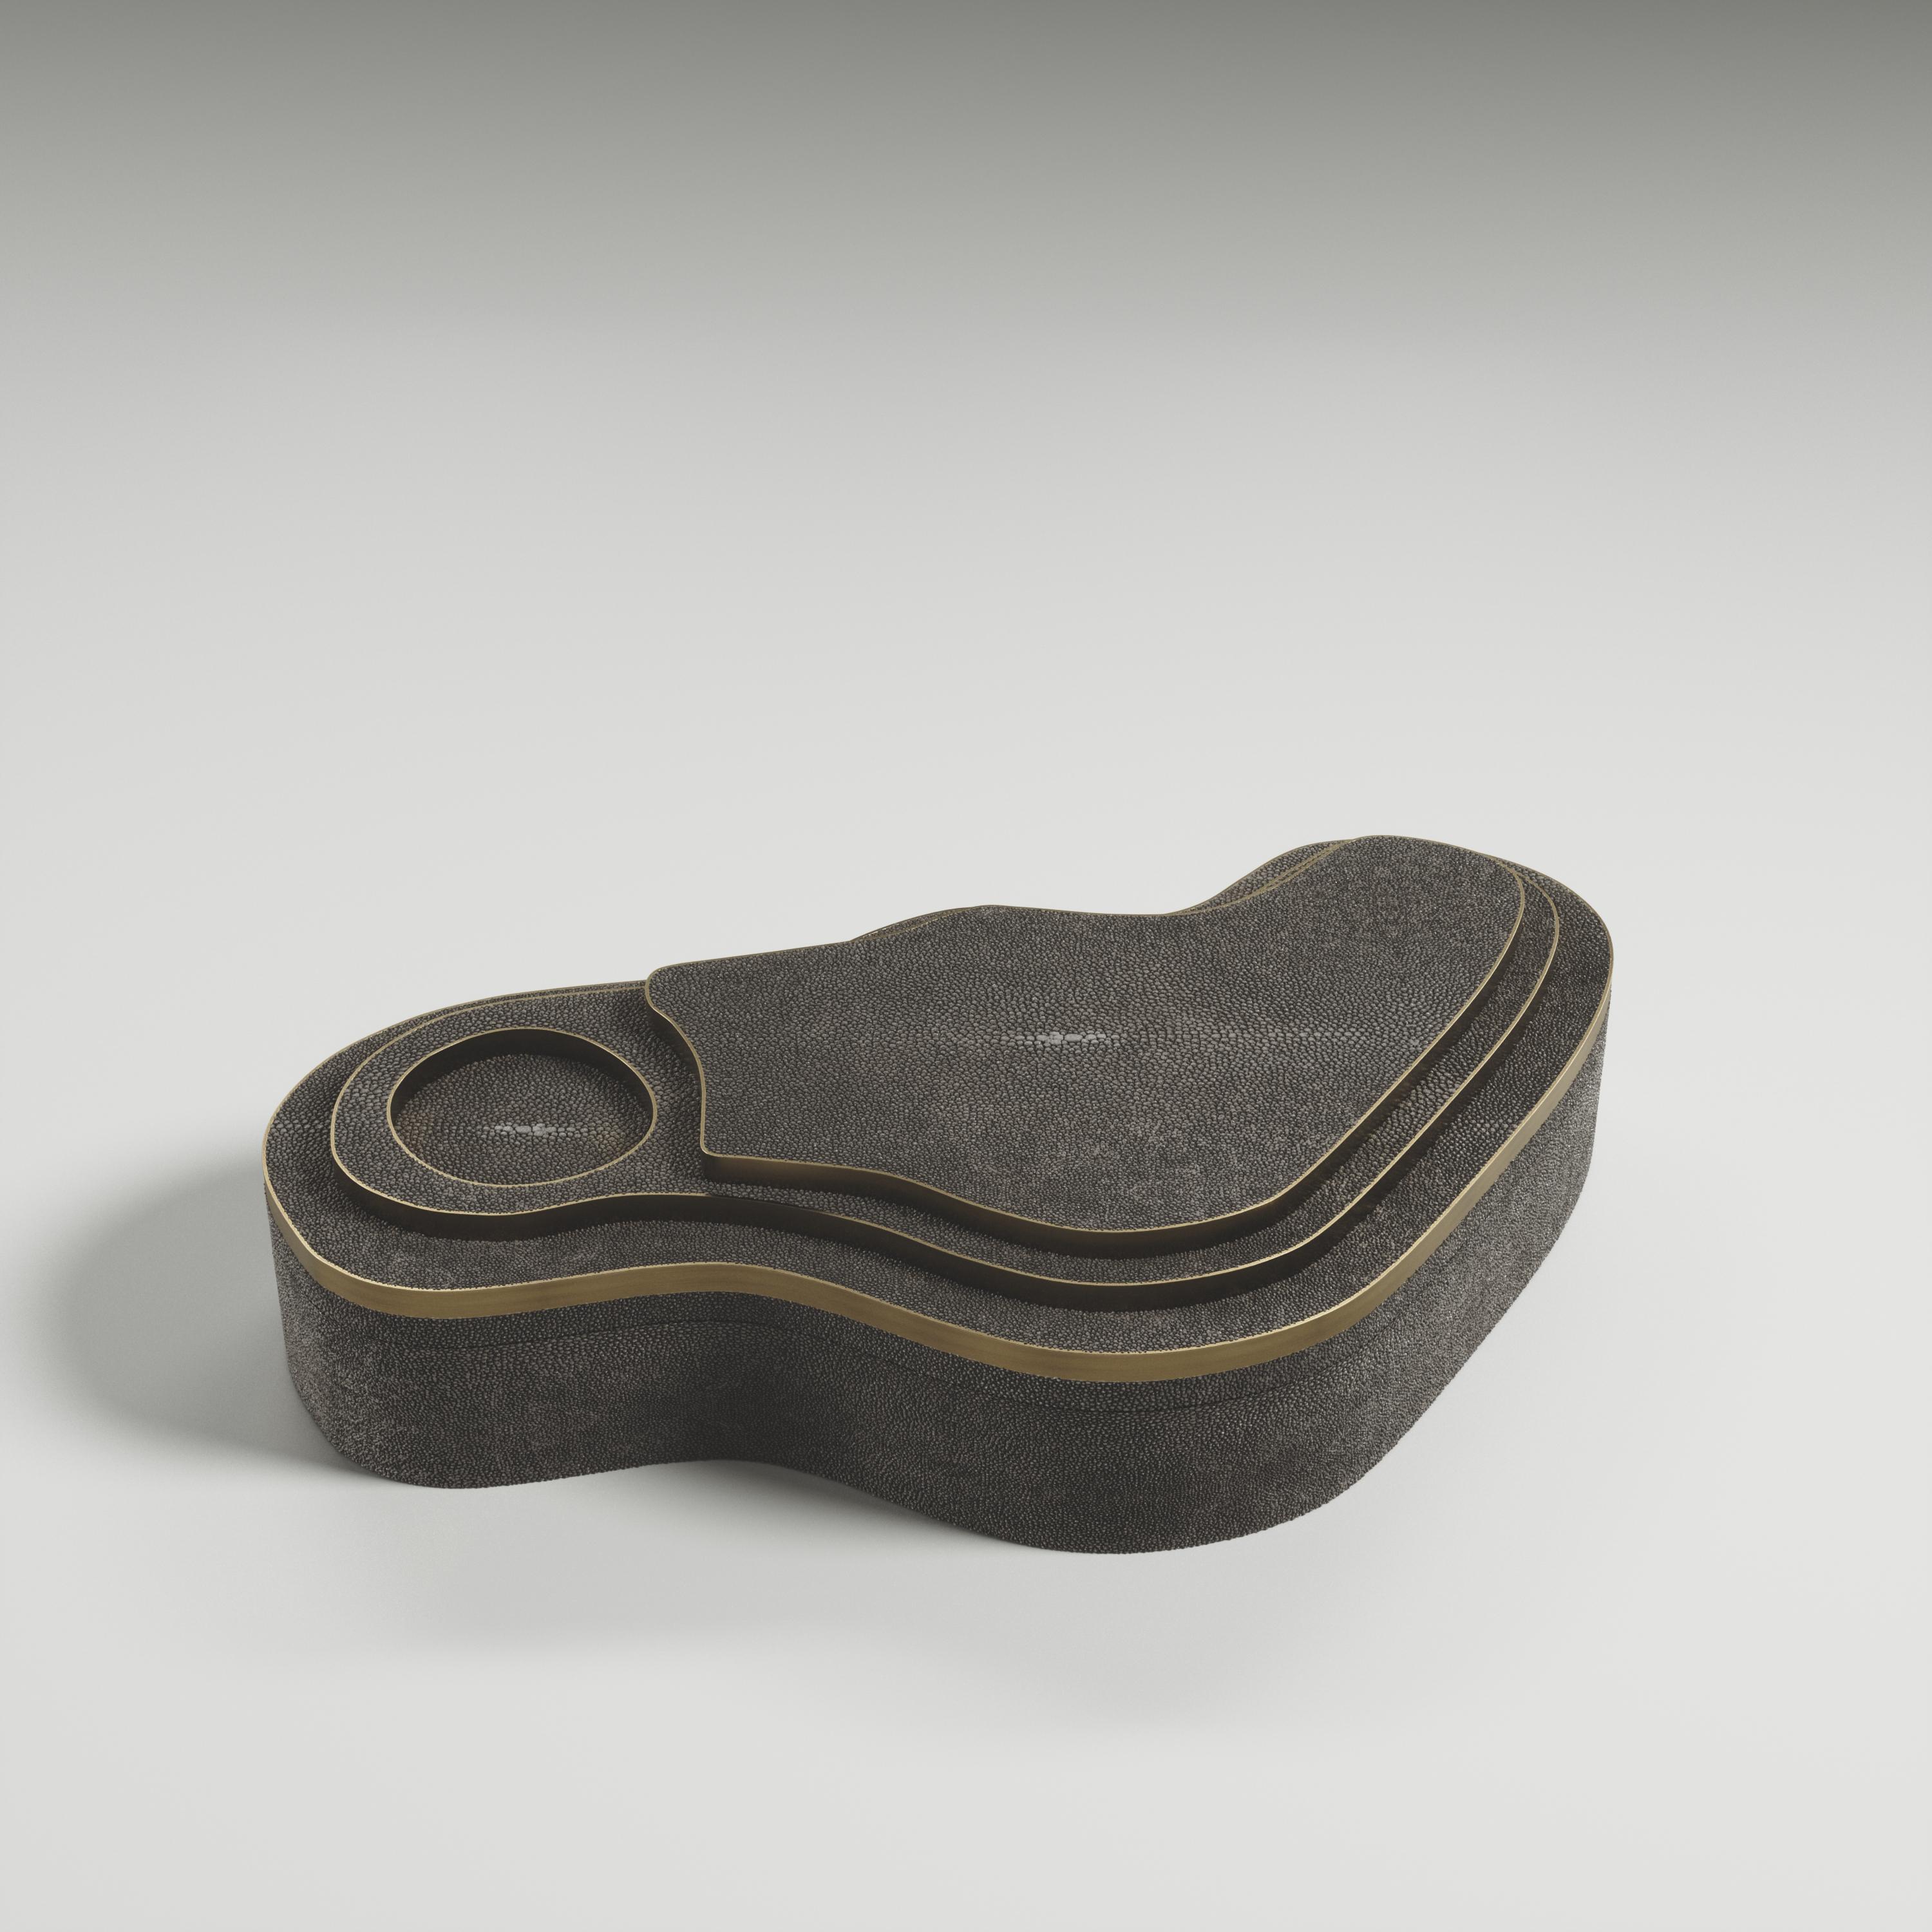 La boîte à masque avec relief de Kifu Paris est une pièce polyvalente et organique. Le plateau et la base amorphes sont incrustés d'un mélange de galuchat noir et de laiton bronze-patine. Cette pièce a été conçue par Kifu Augousti, la fille de Ria